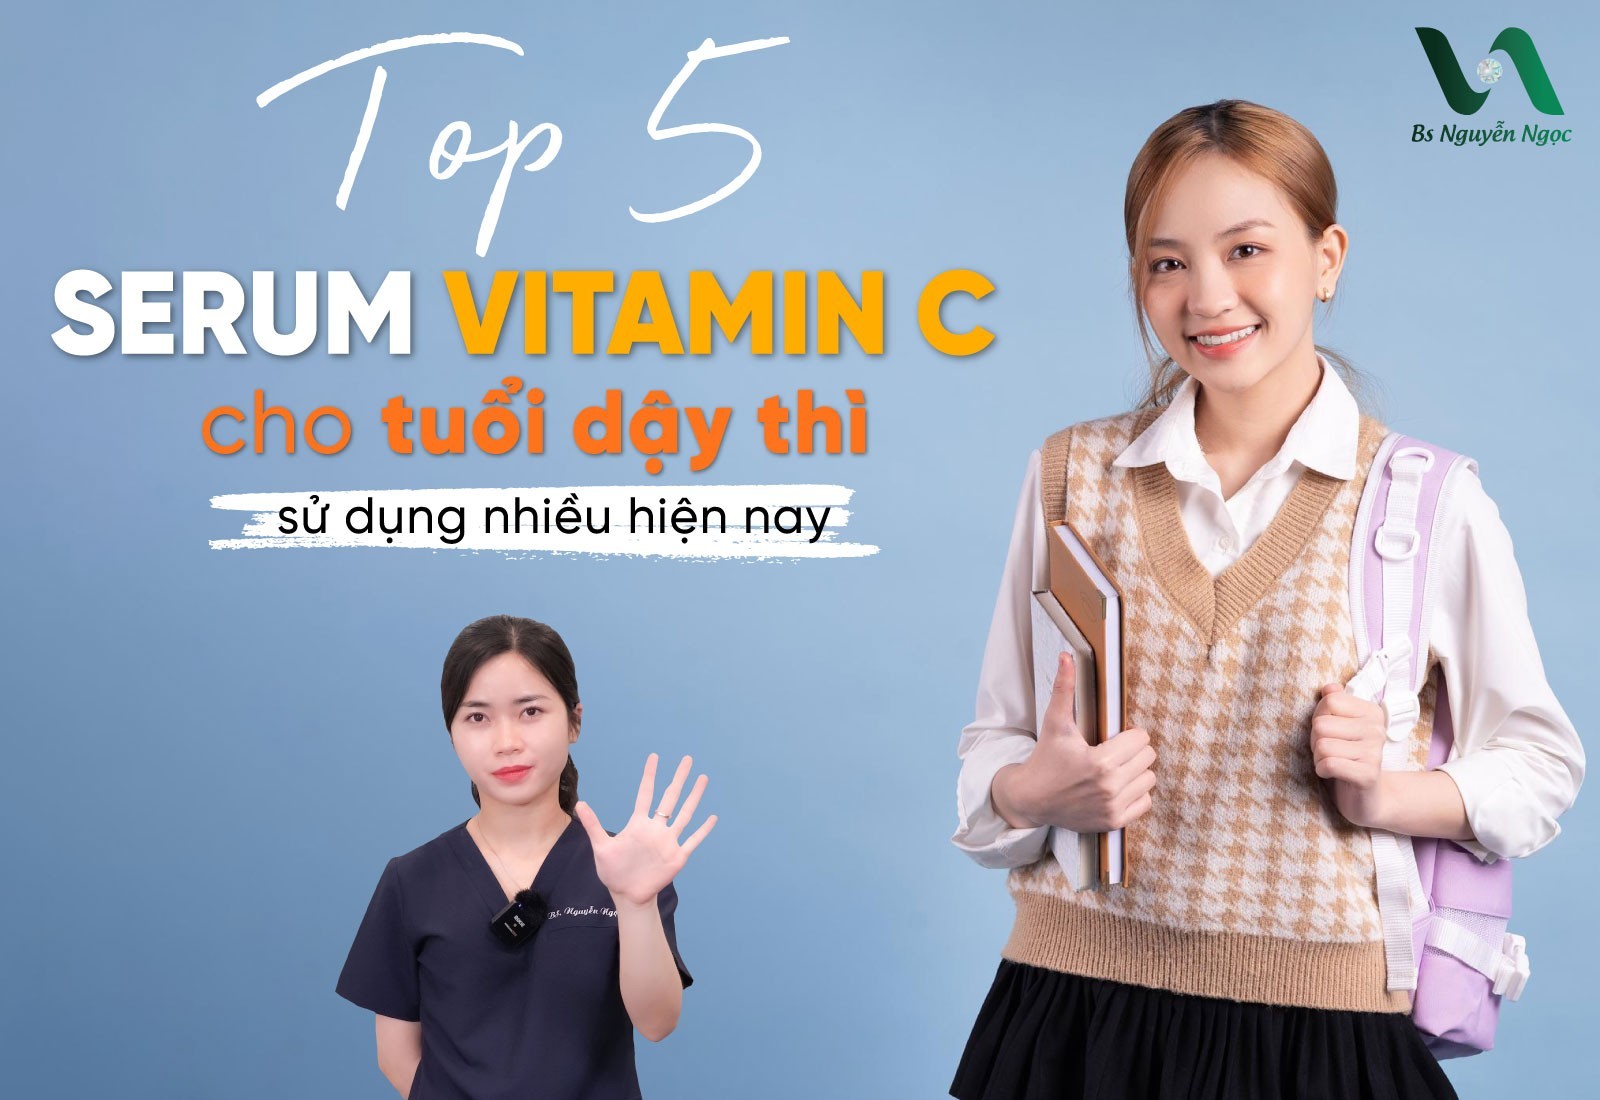 Top 5 Serum Vitamin C cho tuổi dậy thì sử dụng nhiều hiện nay